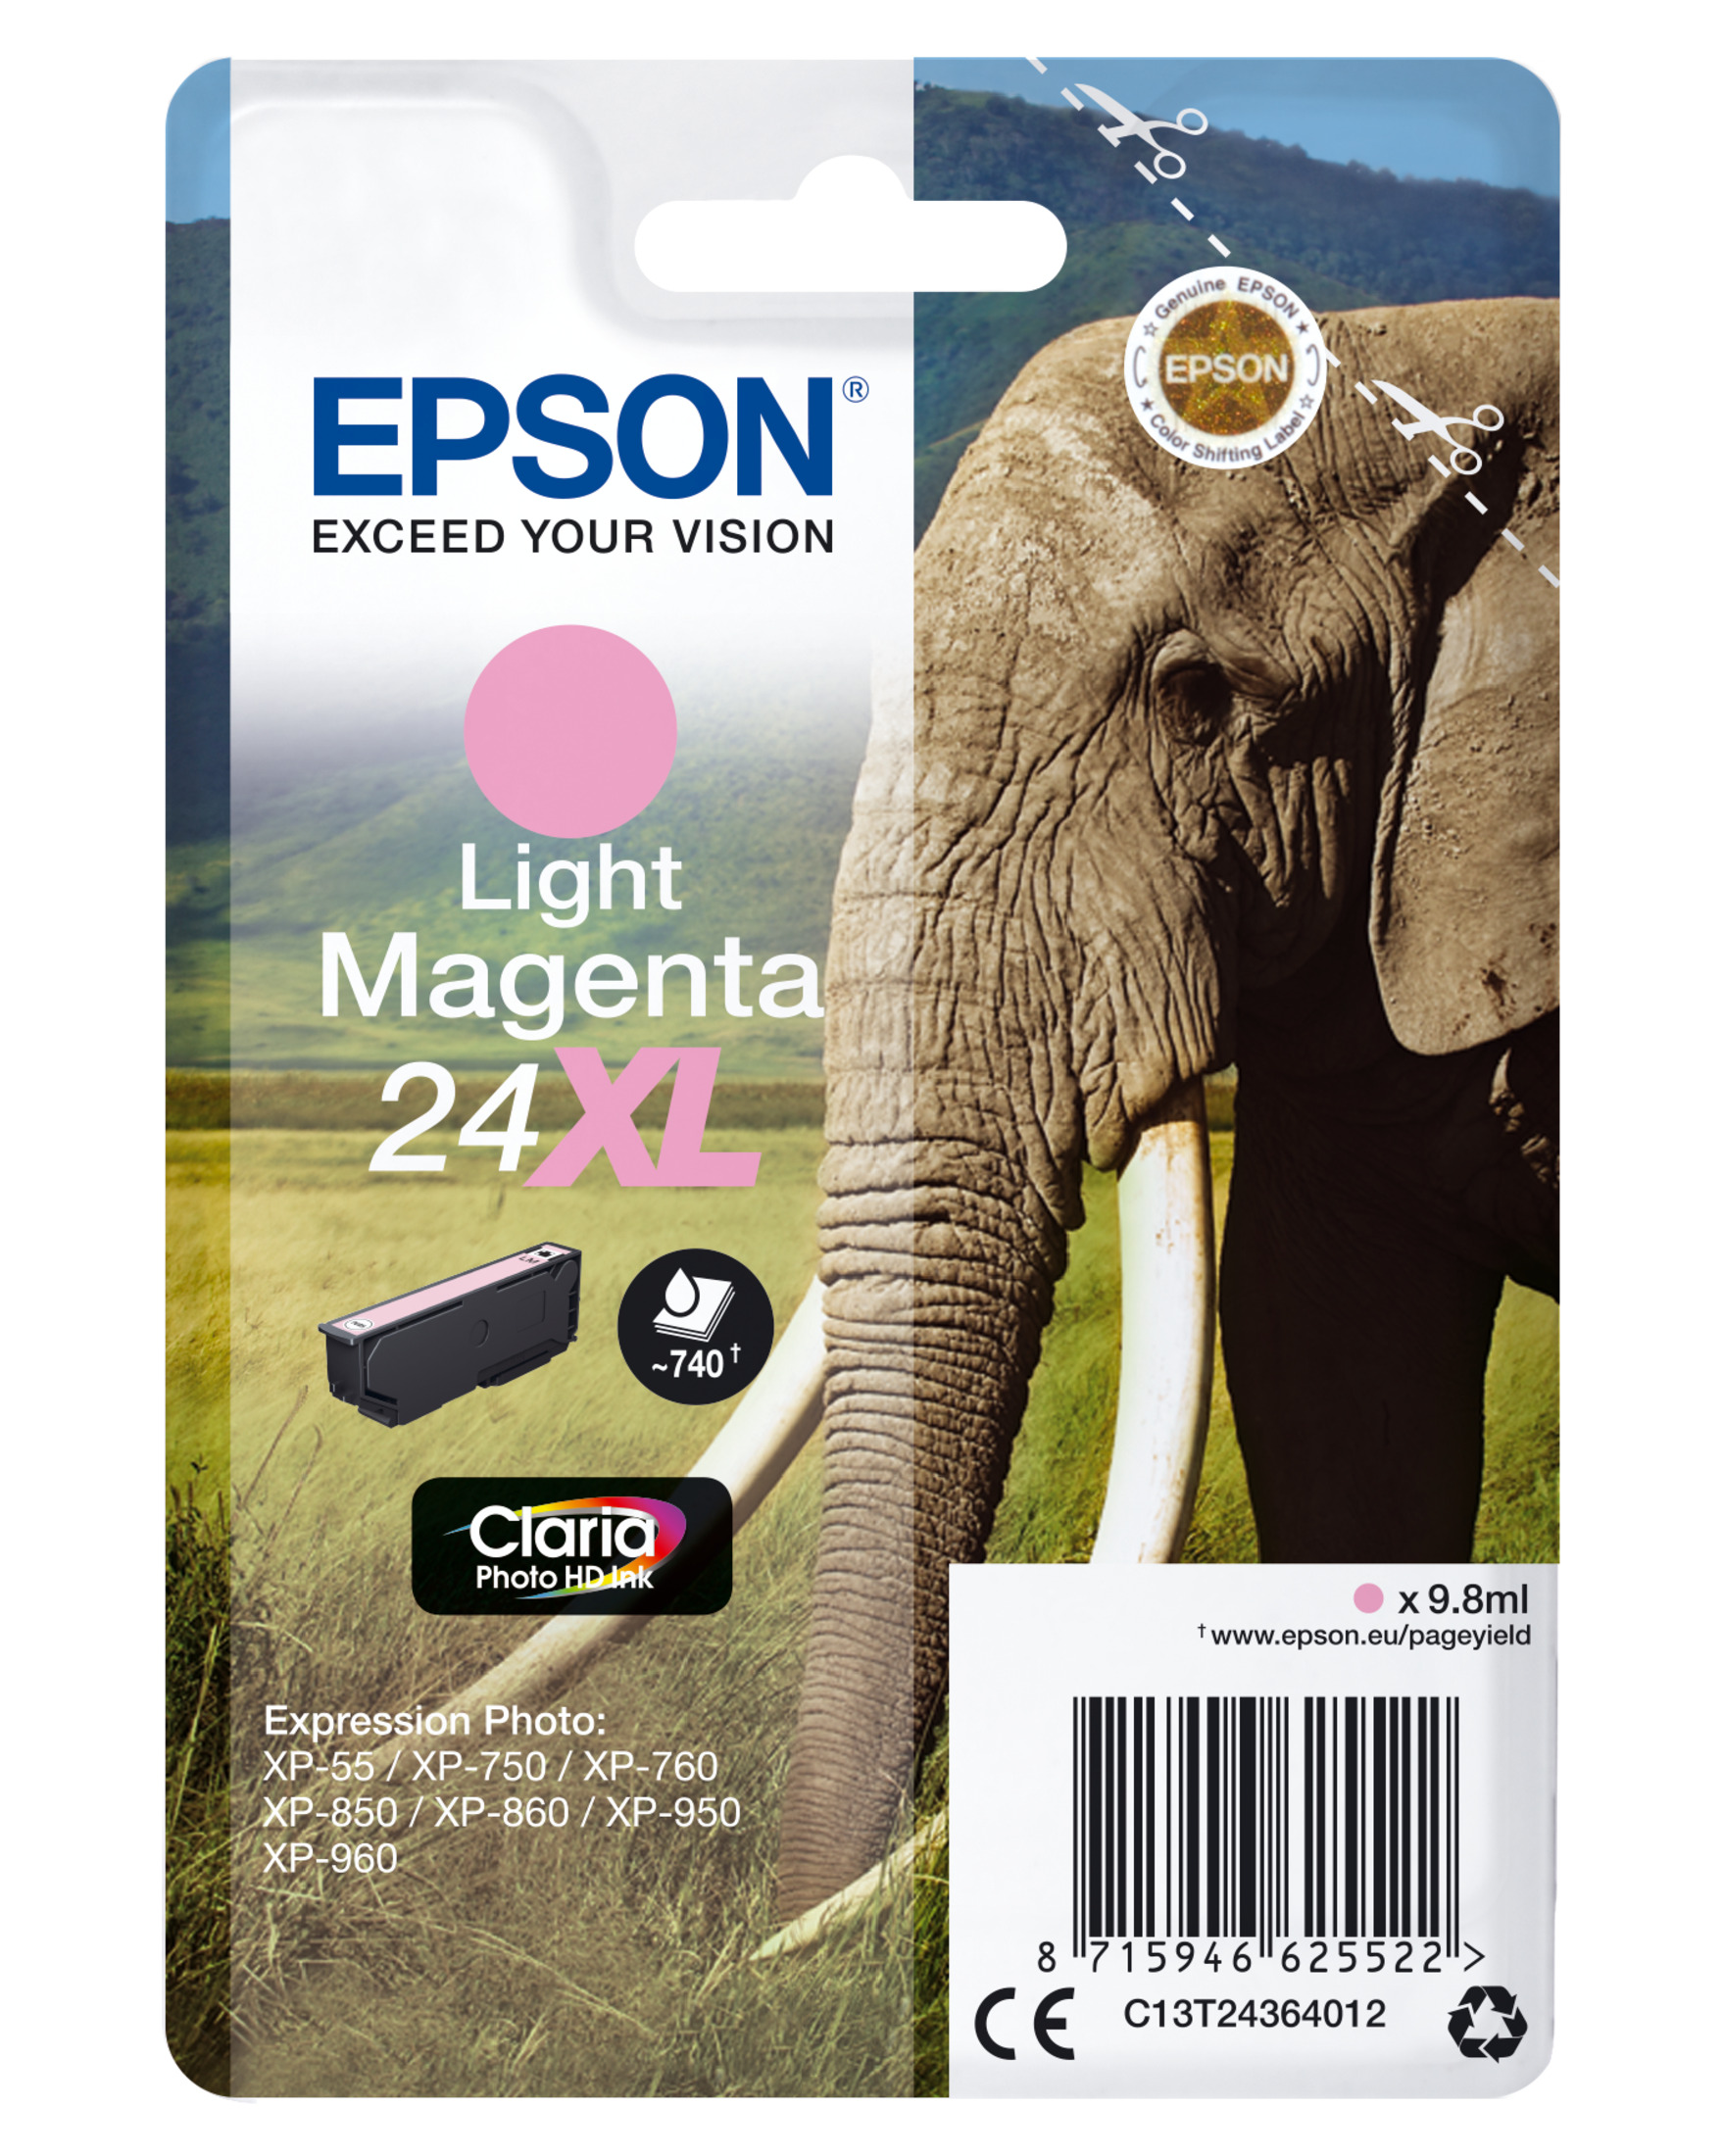 EPSON 24XL Tinte (C13T24364012) photo magenta